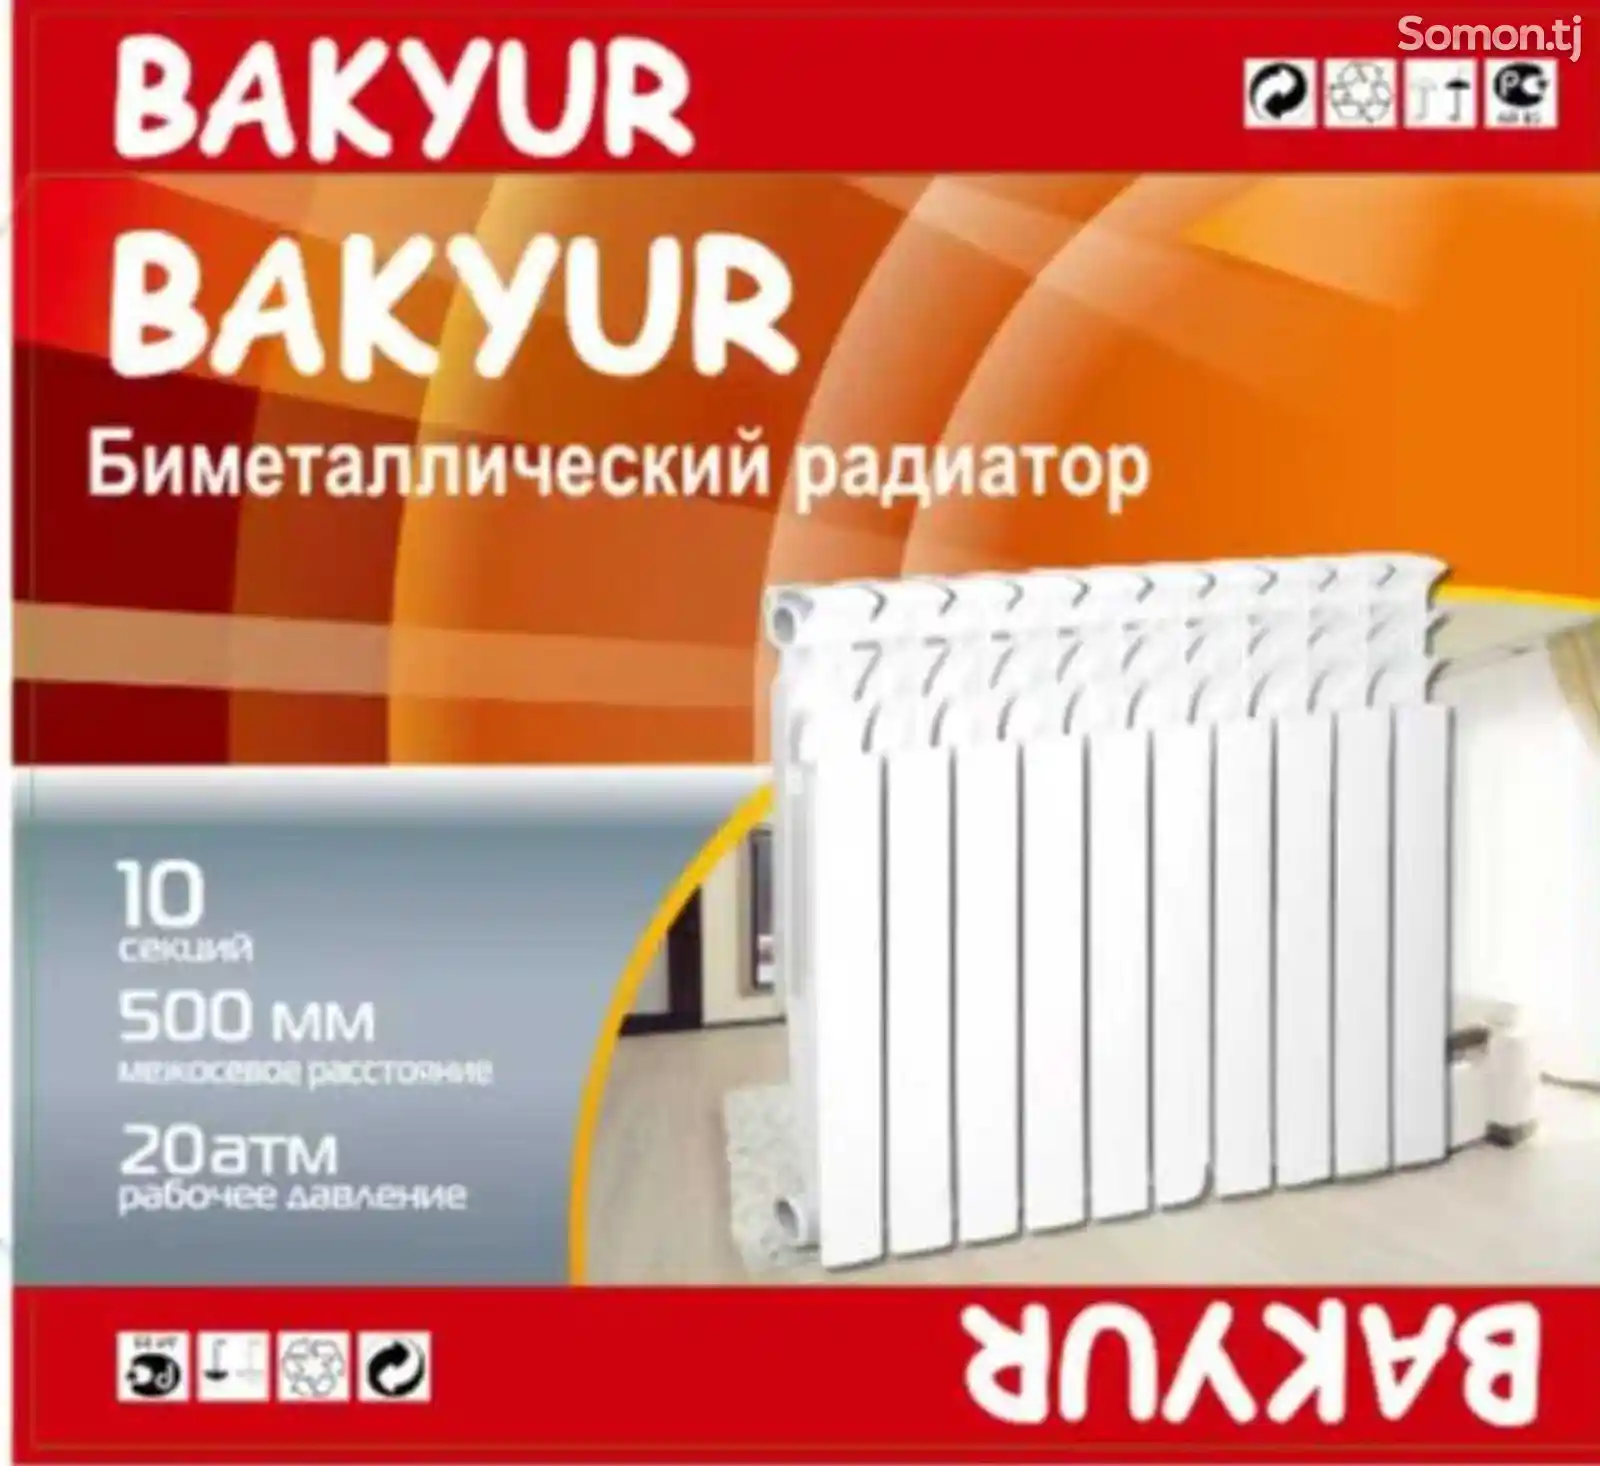 Биметалический радиатор Bakyur-1